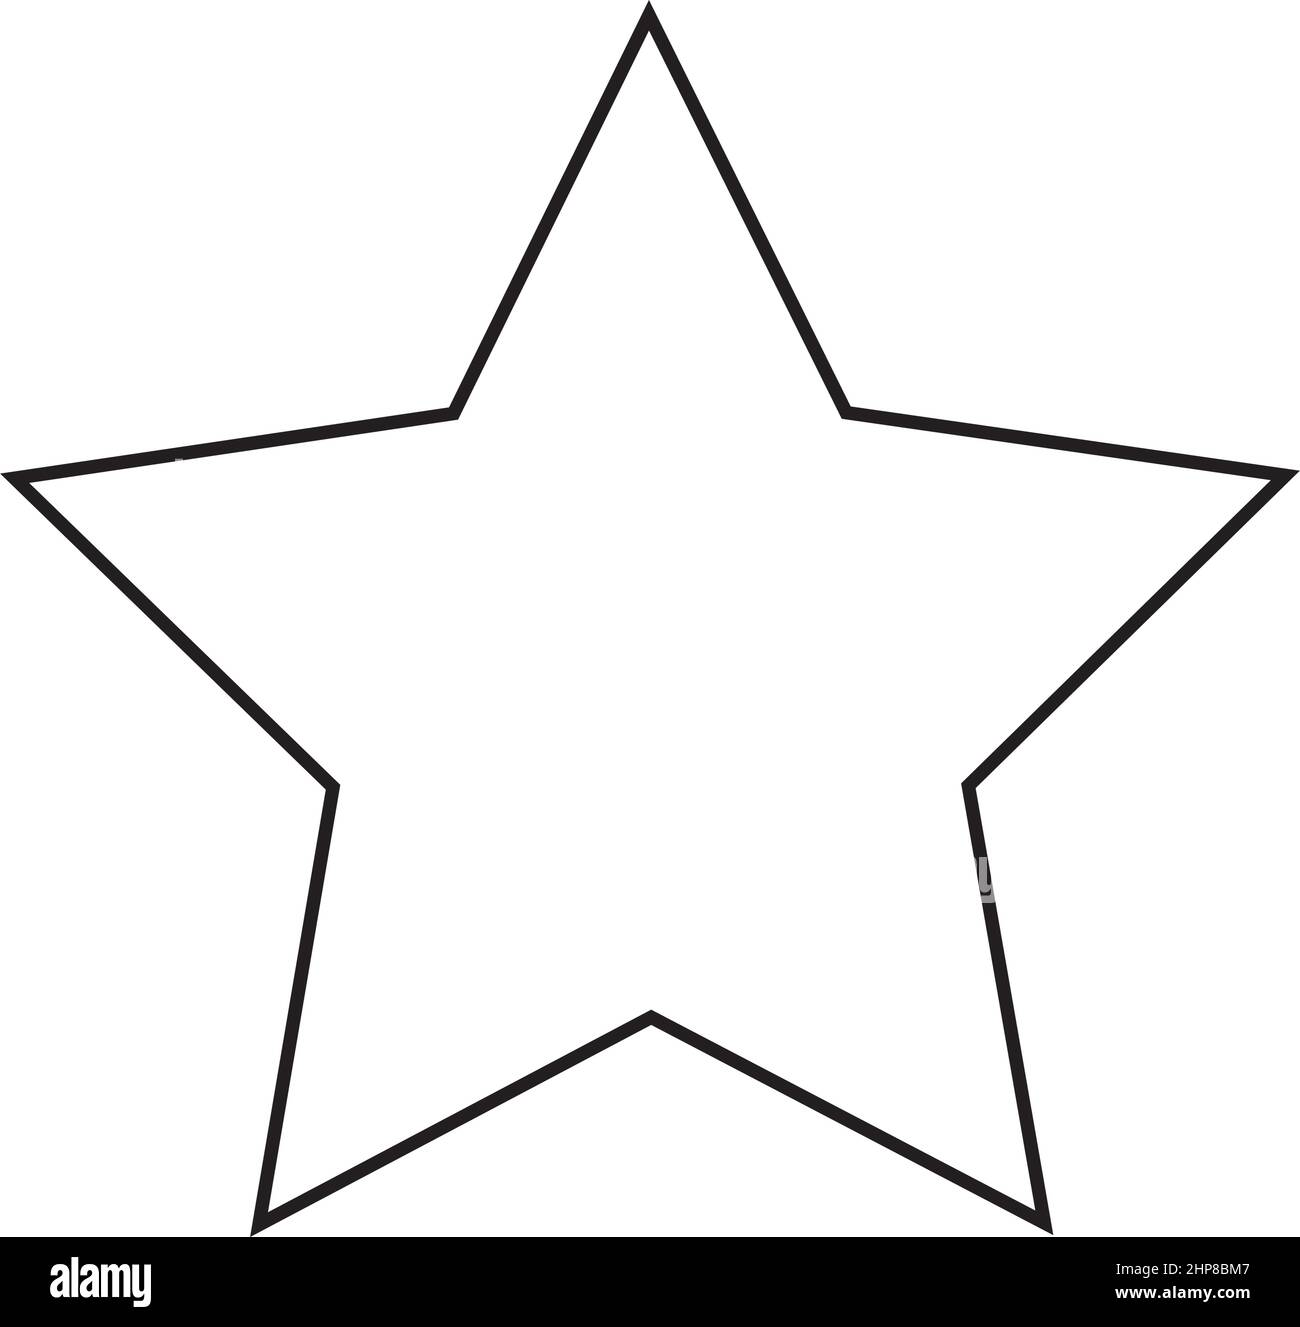 Icono de forma de estrella símbolo vectorial contorno trazo para diseño gráfico creativo elemento de interfaz de usuario en una ilustración de pictograma Ilustración del Vector